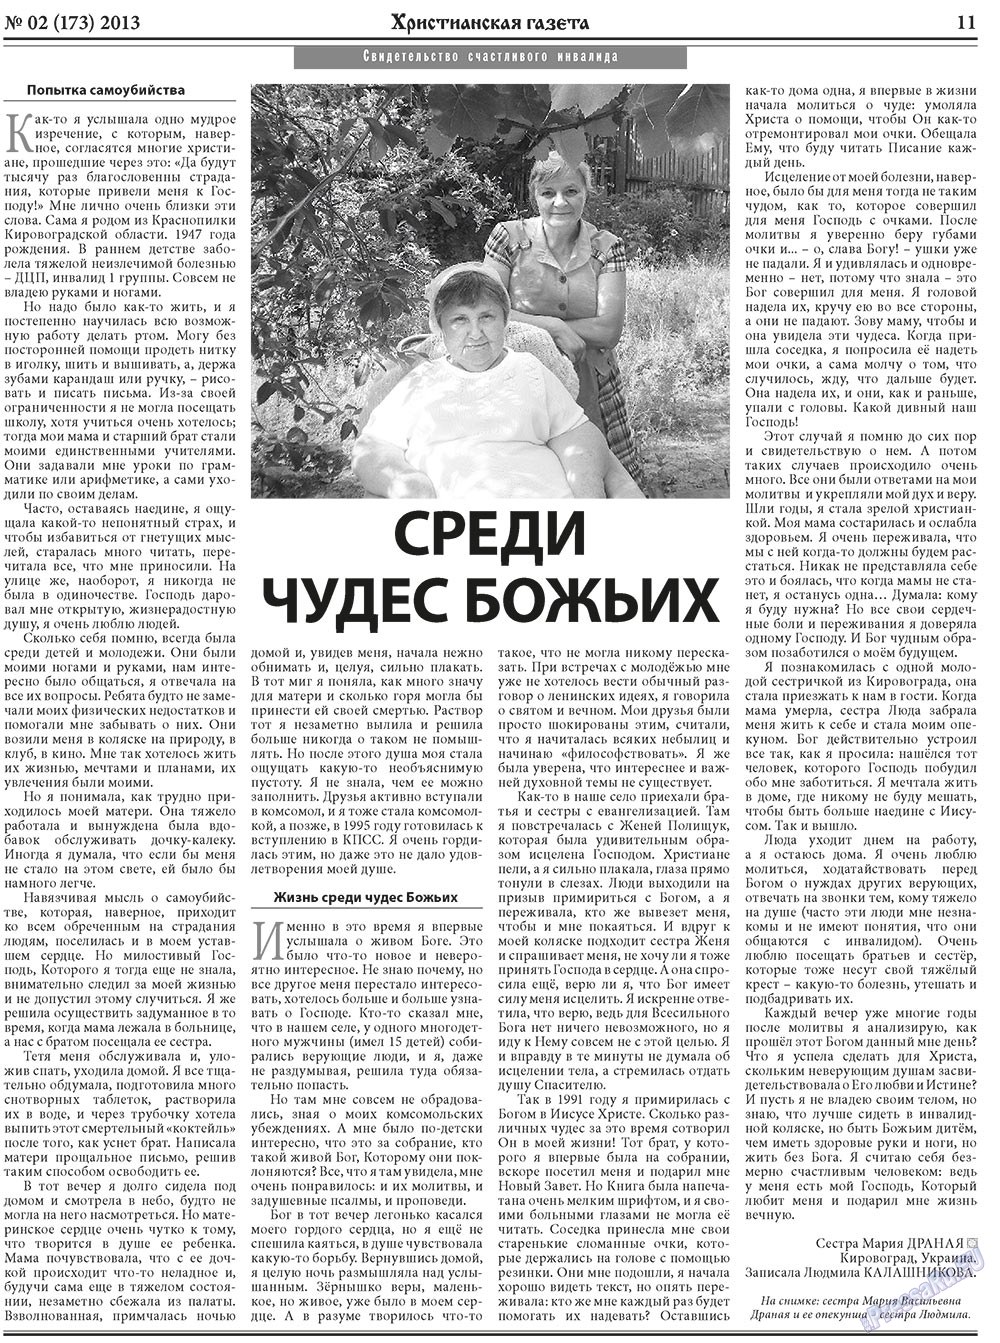 Христианская газета, газета. 2013 №2 стр.11